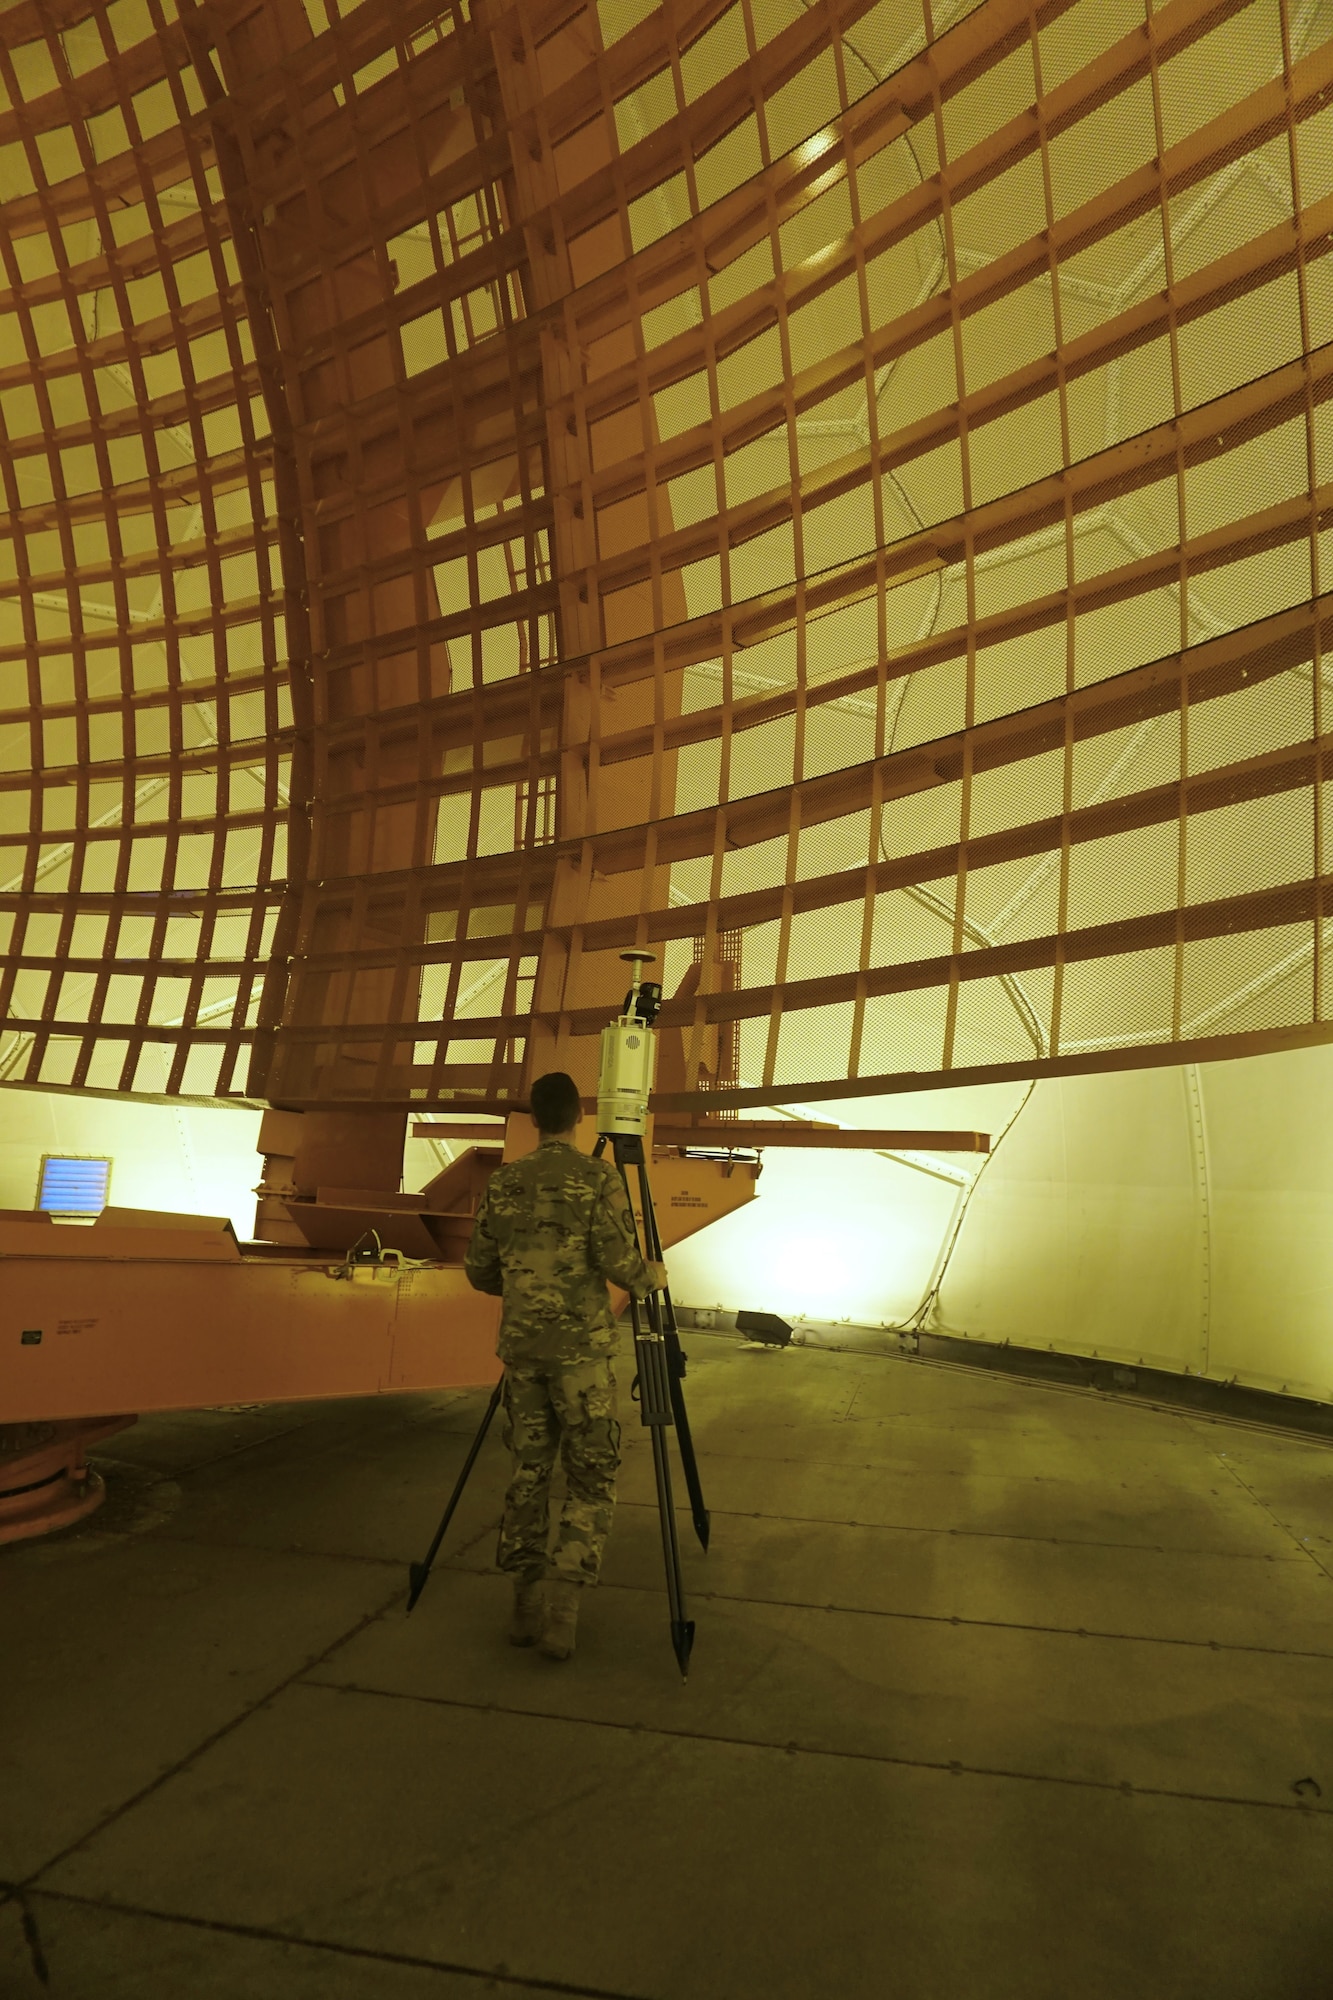 U.S. Airman standing in front of radar